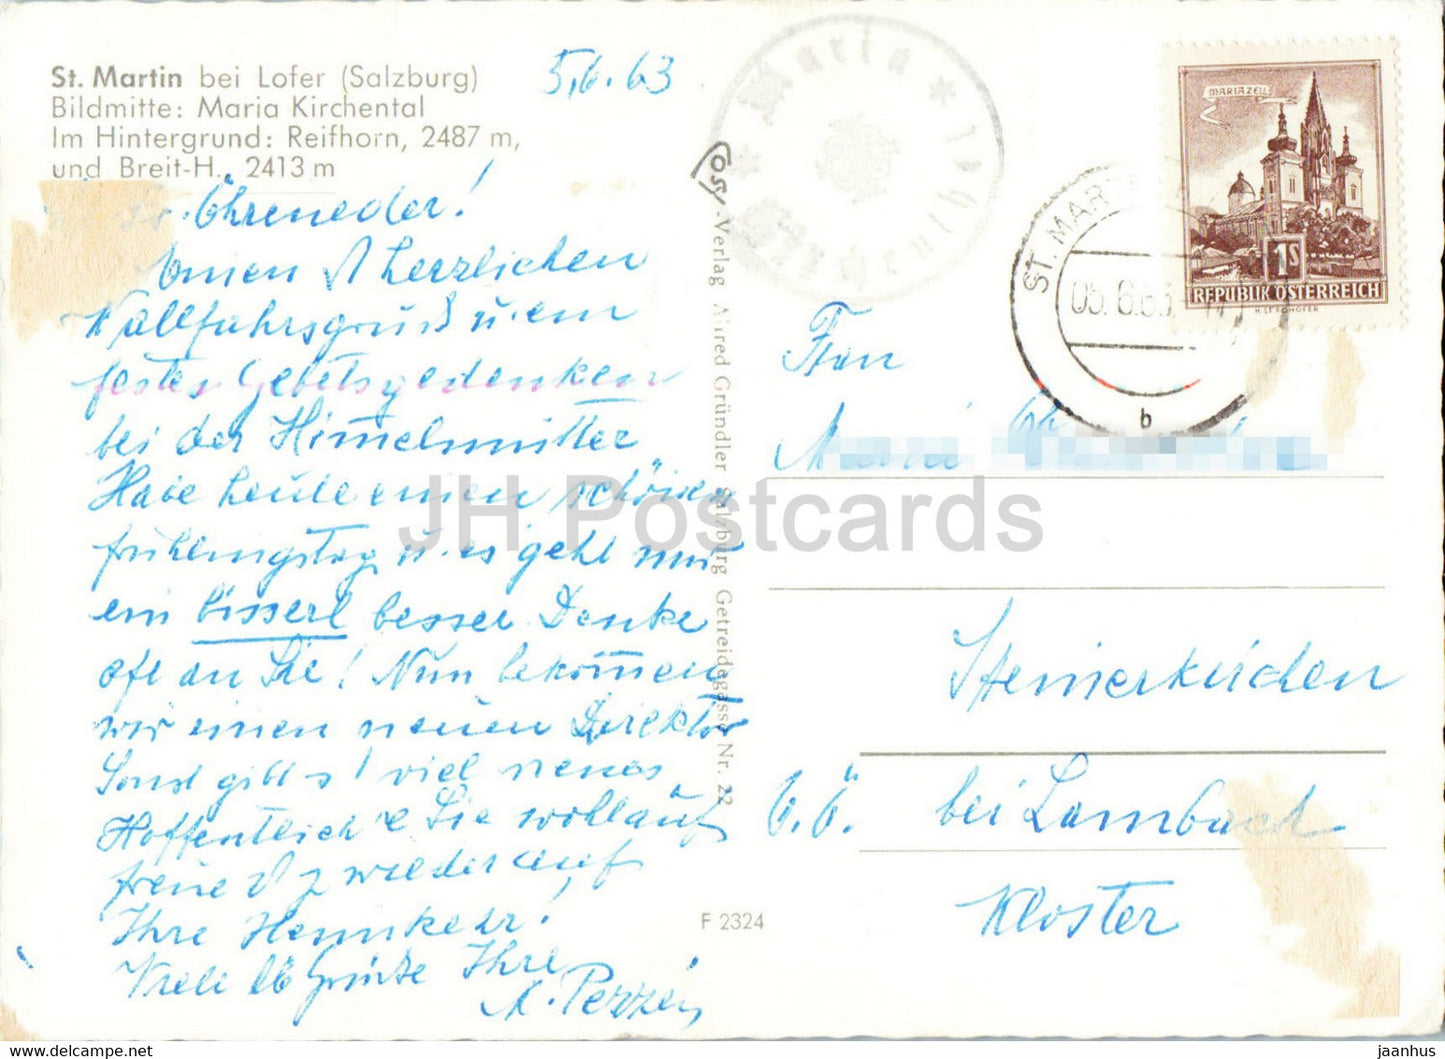 St Martin bei Lofer - Maria Kirchental - Reifhorn - 1963 - Autriche - d'occasion